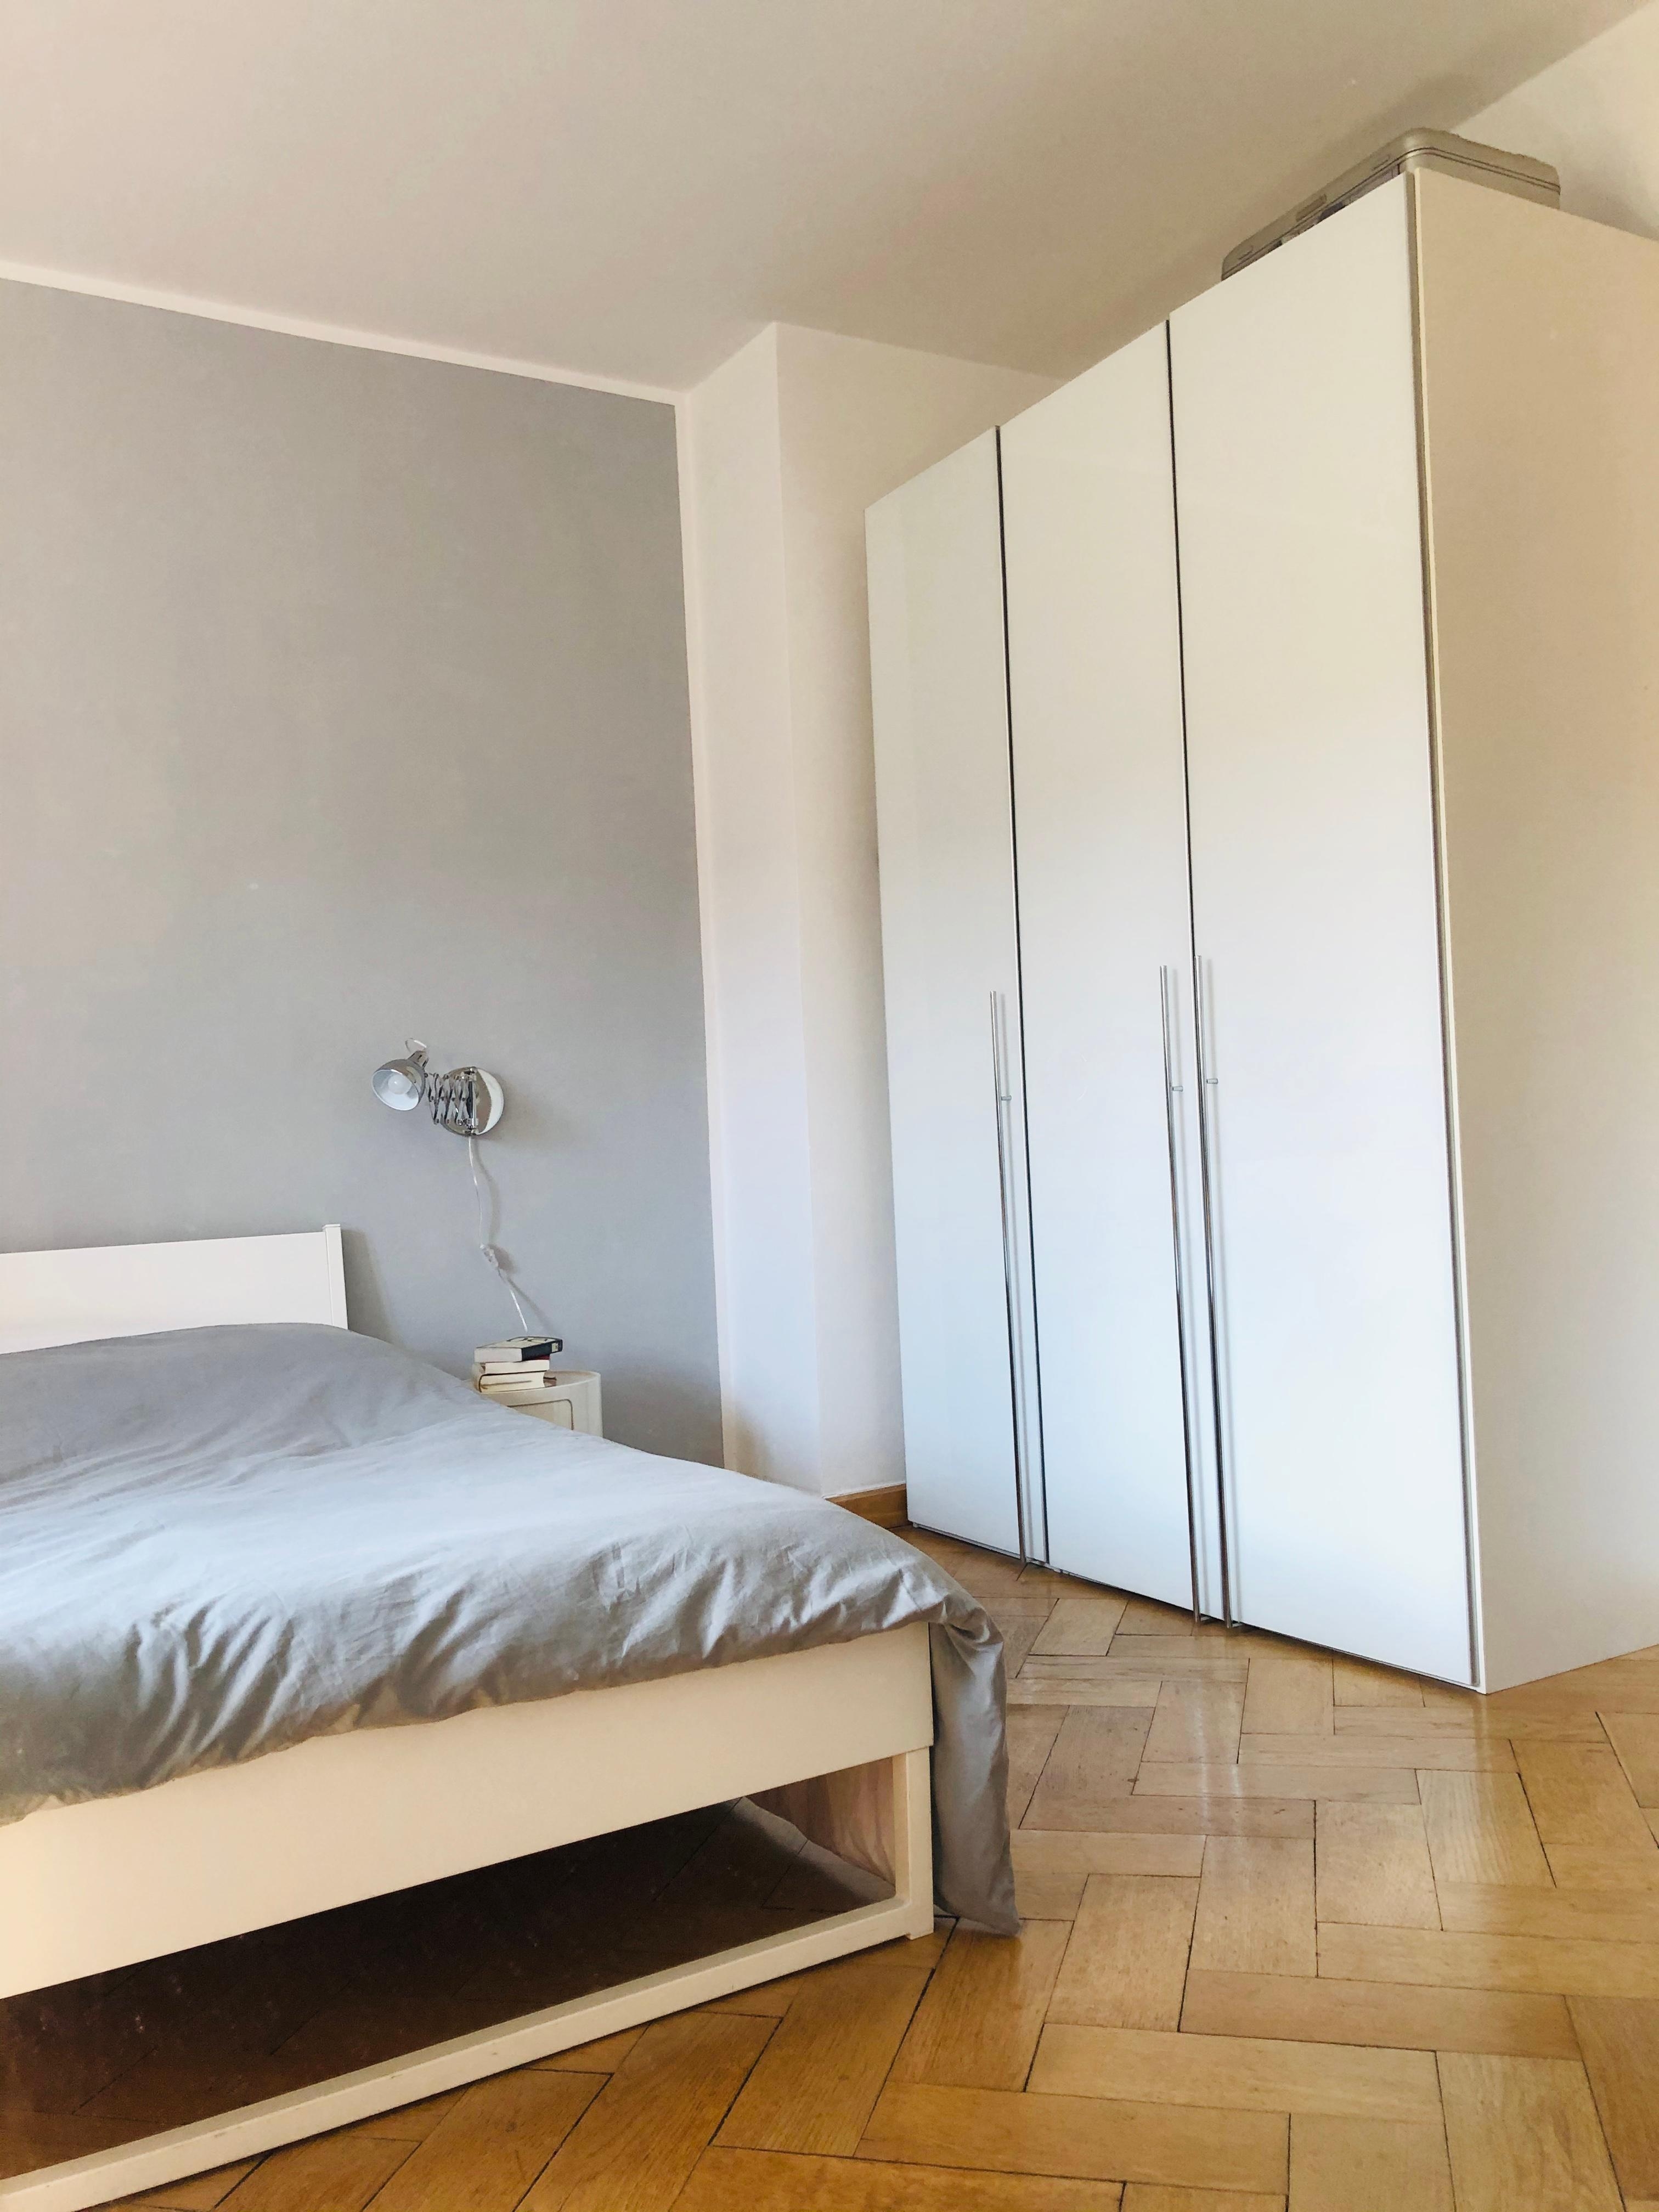 Neue Farbe ... grau ist beautiful!
#schlafzimmer #minimalistisch #plain #altbau #simple